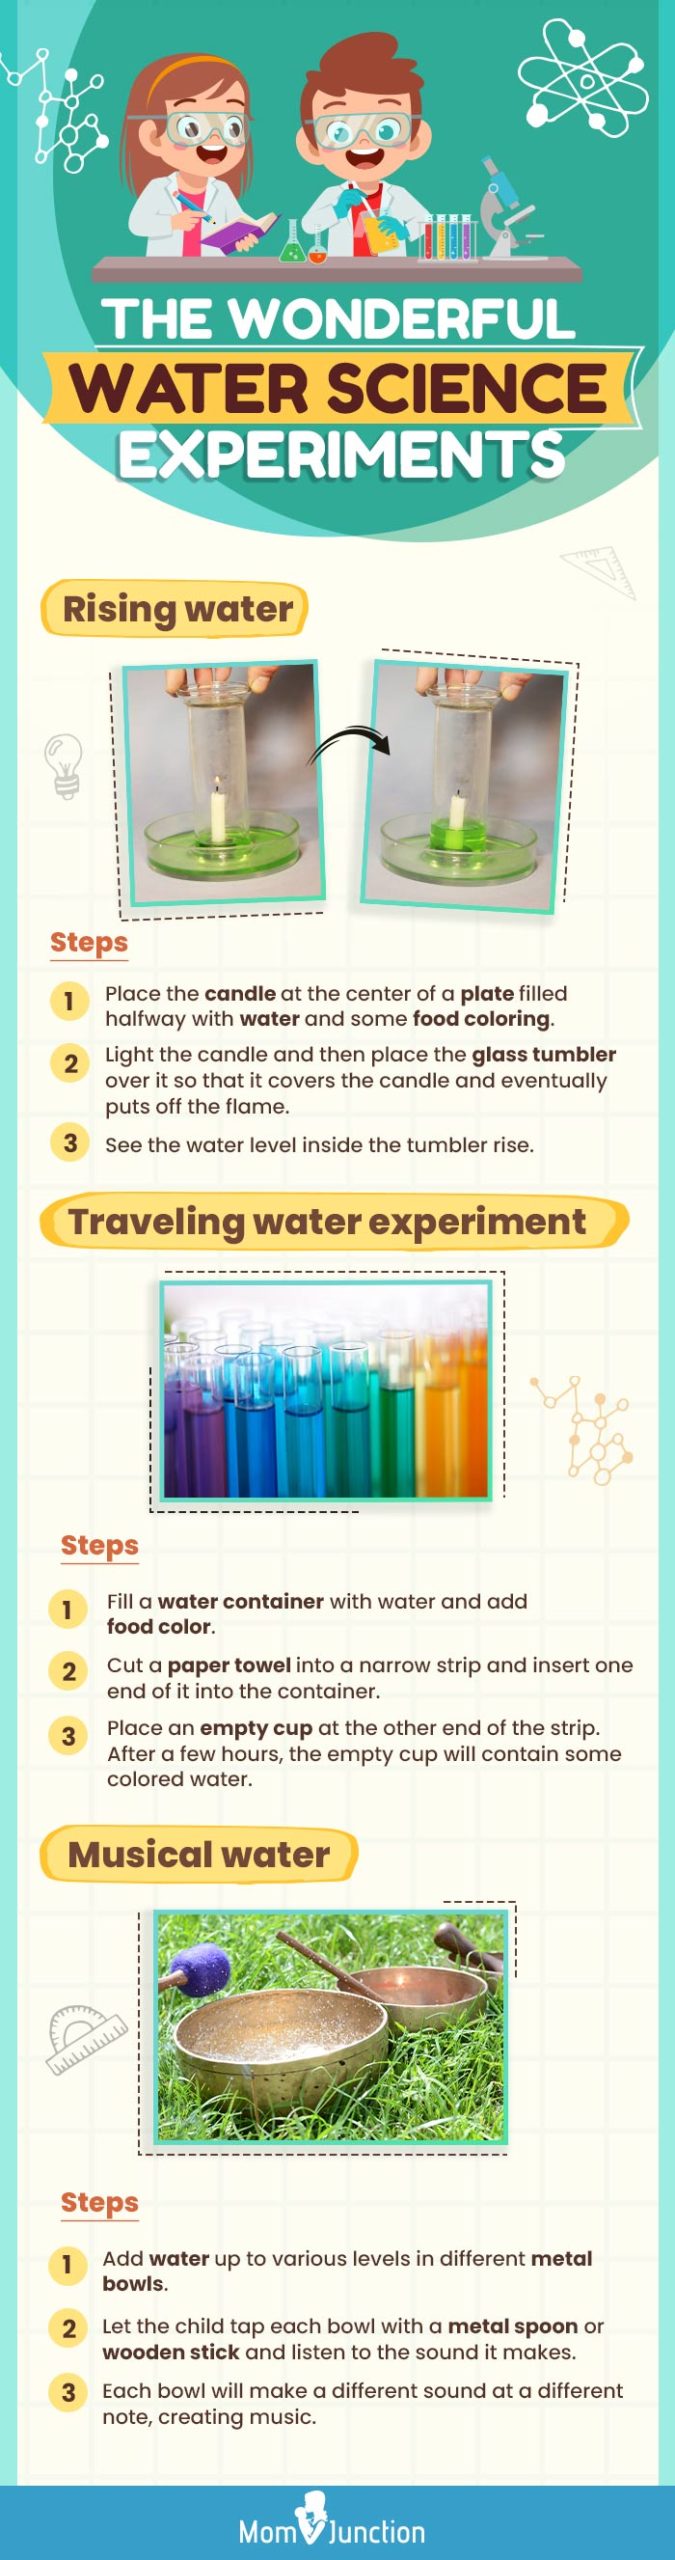 儿童用水进行科学实验(信息图)